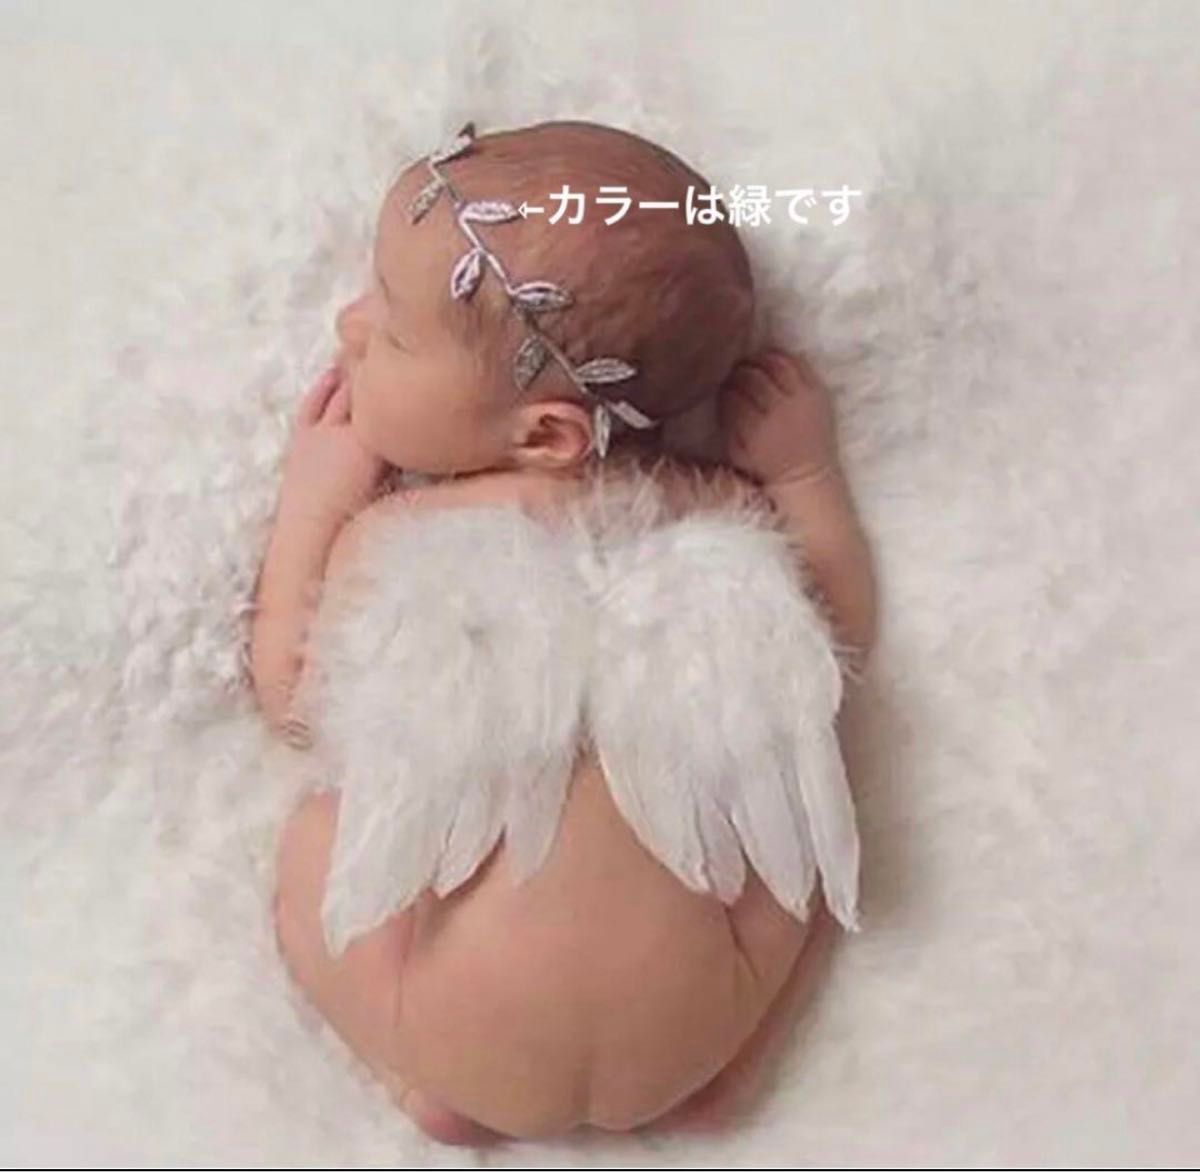 赤ちゃん 出産祝い 天使の羽 葉っぱ 冠 風船 バルーン お食い初め 記念日 ニューボーンフォト ニューボーン